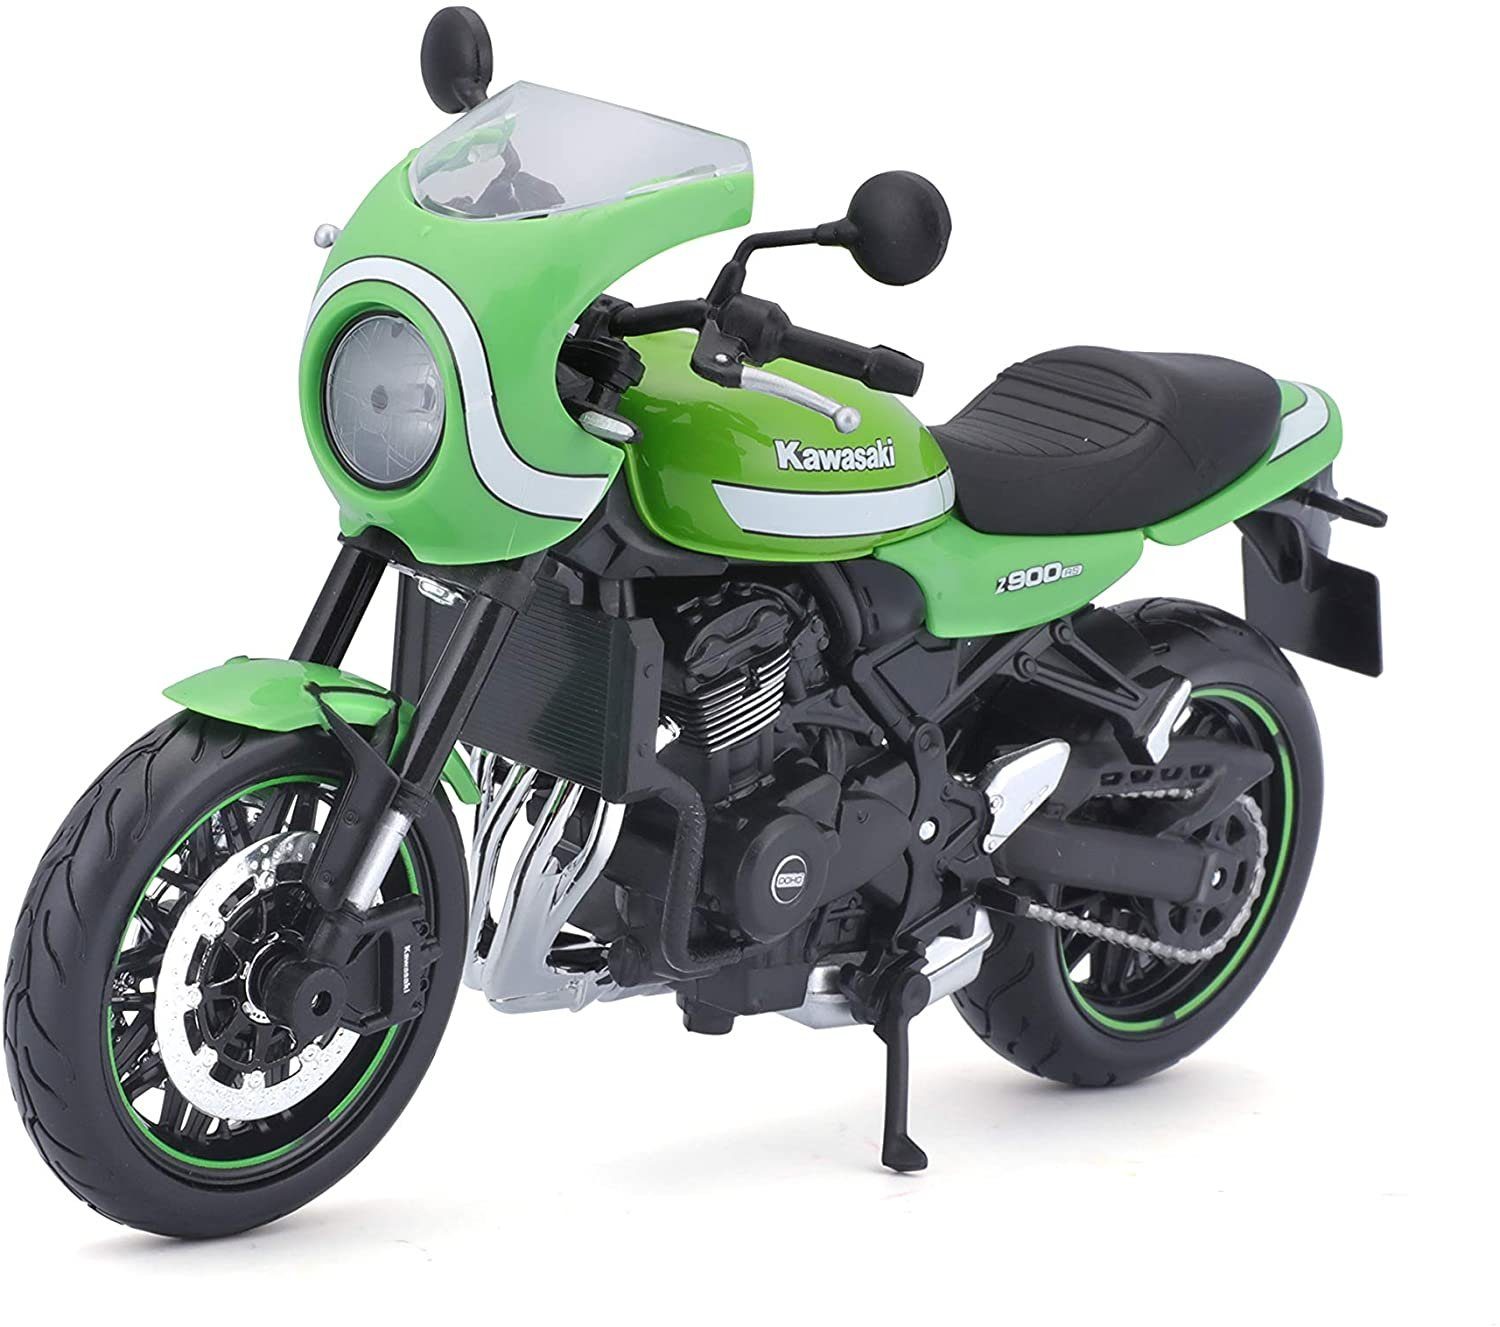 Kawasaki Z 900 RS Cafe grün Maßstab 1:12 Motorrad Modell von maisto 